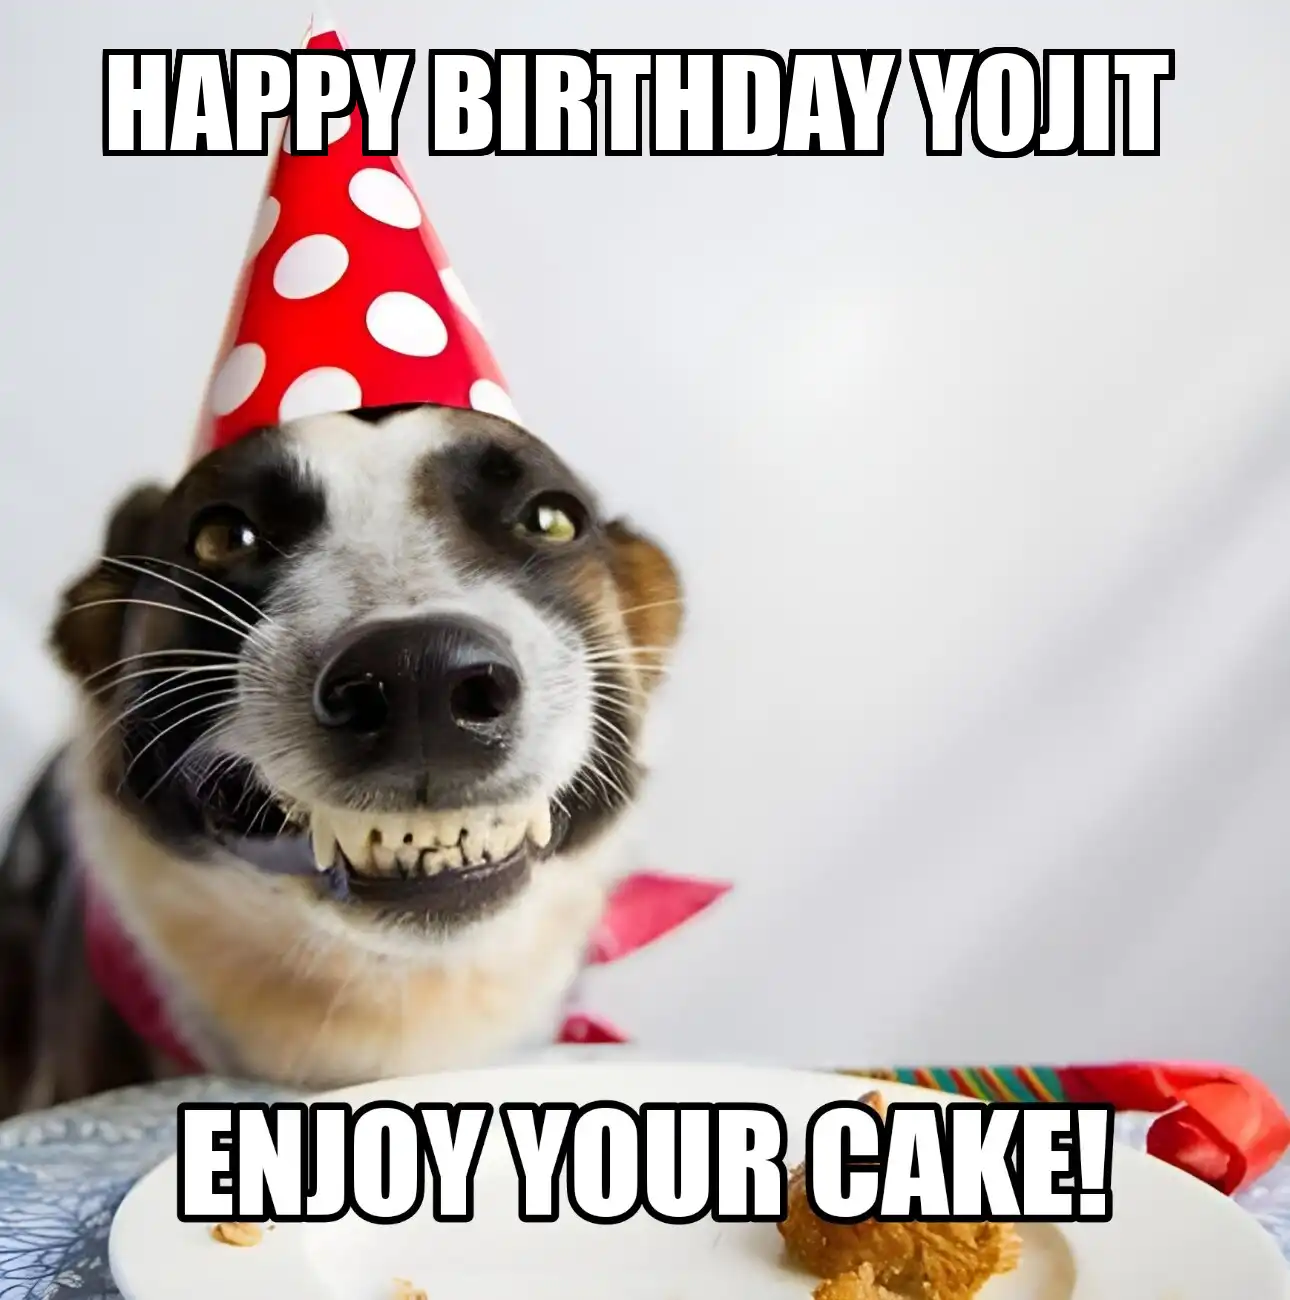 Happy Birthday Yojit Enjoy Your Cake Dog Meme